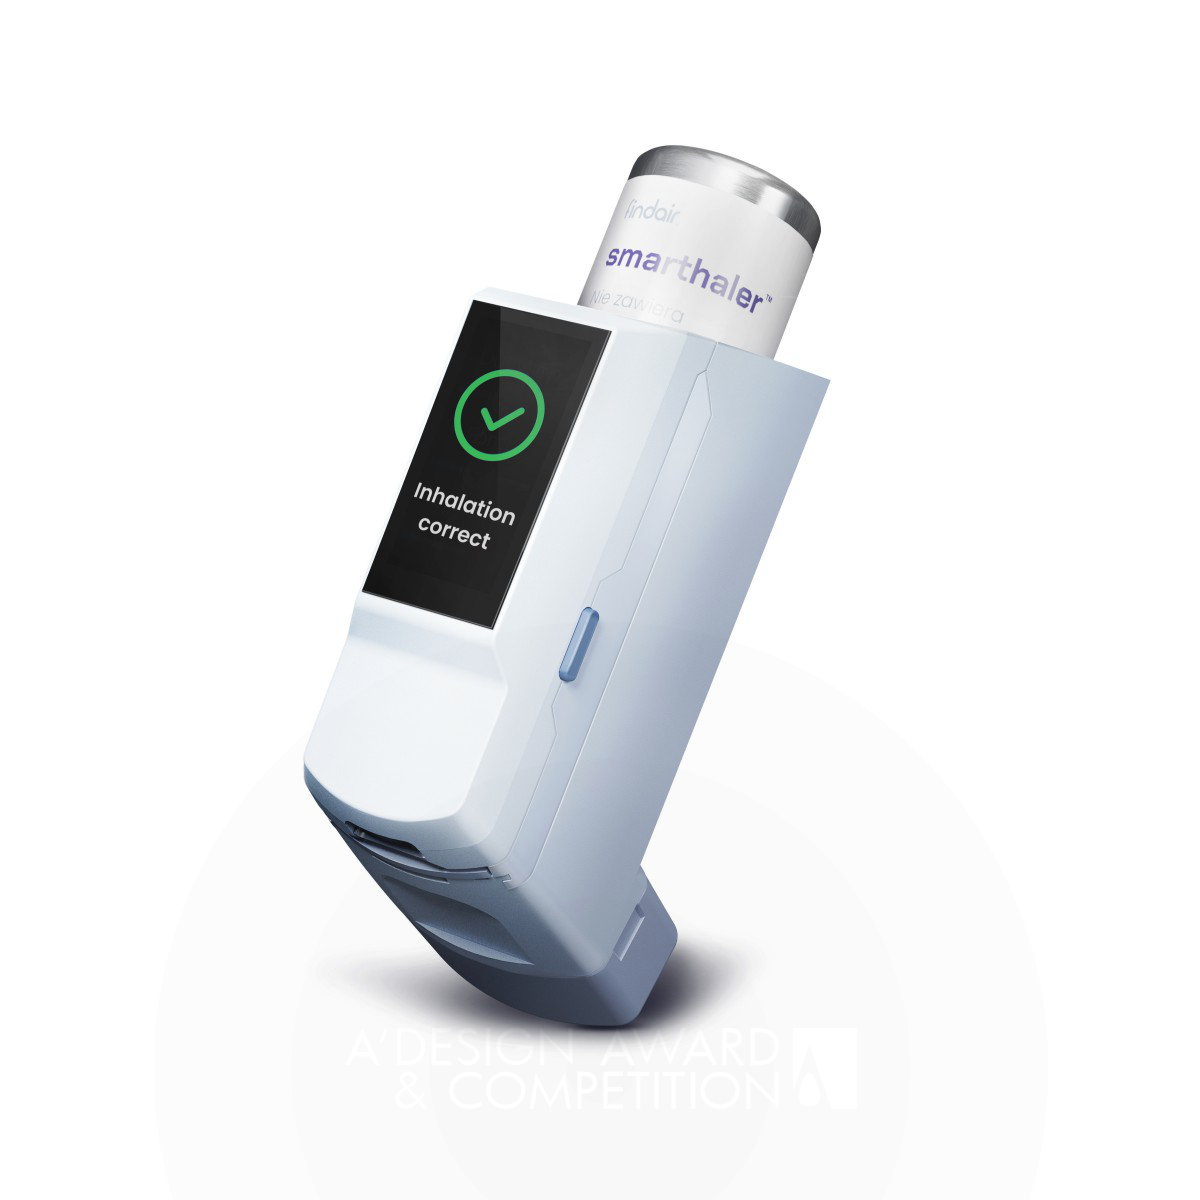 Smarthaler Smart pMDI Inhaler by Jacek Mikosz